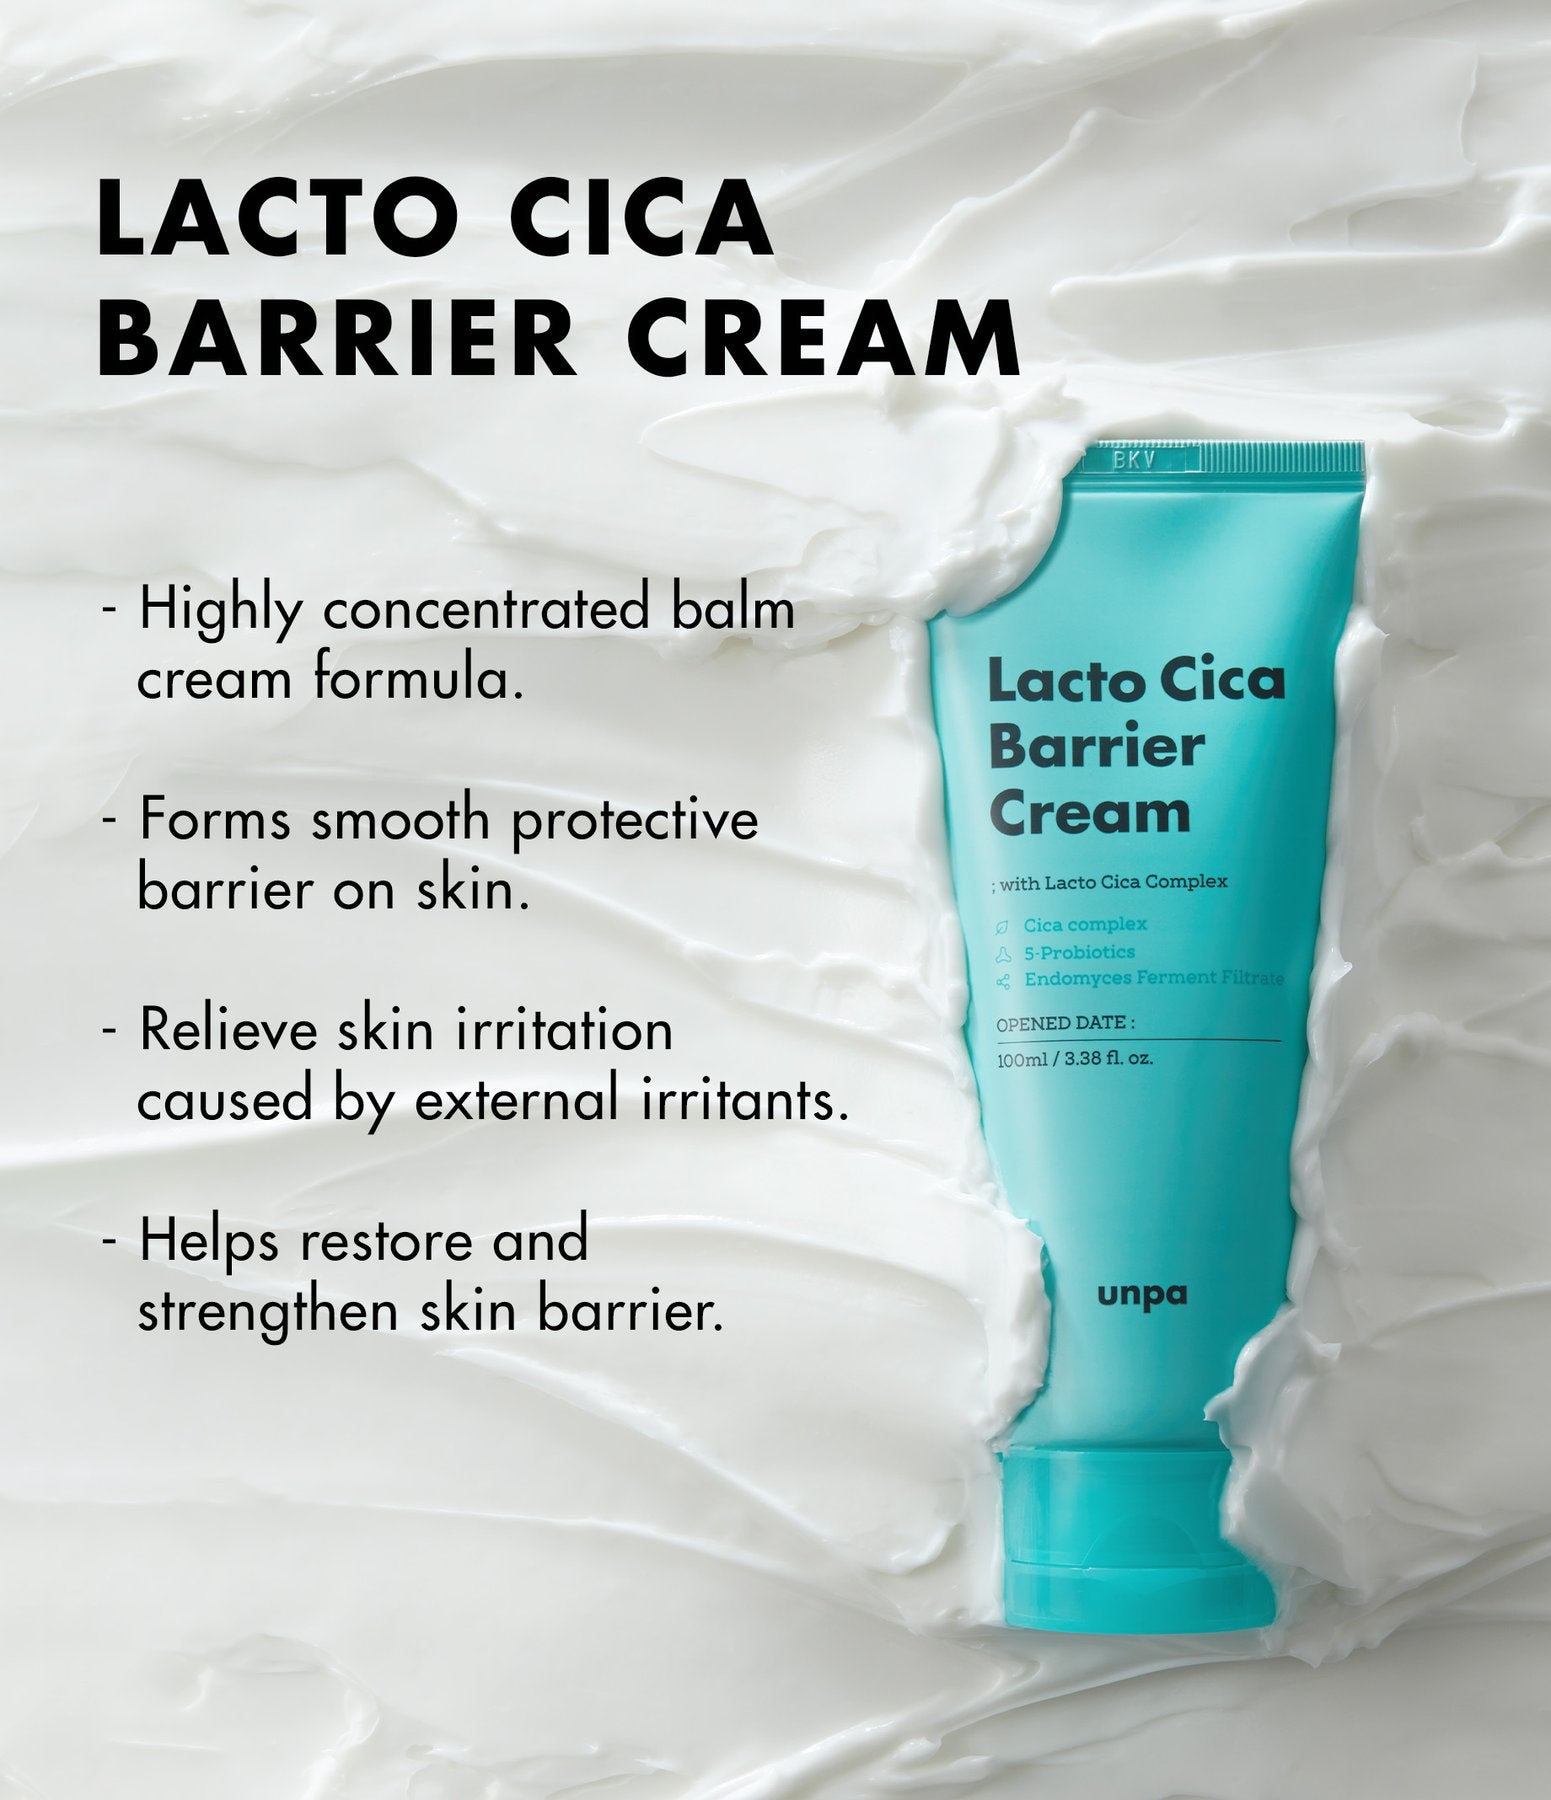 UNPA Lacto Cica Barrier Cream (100ml)